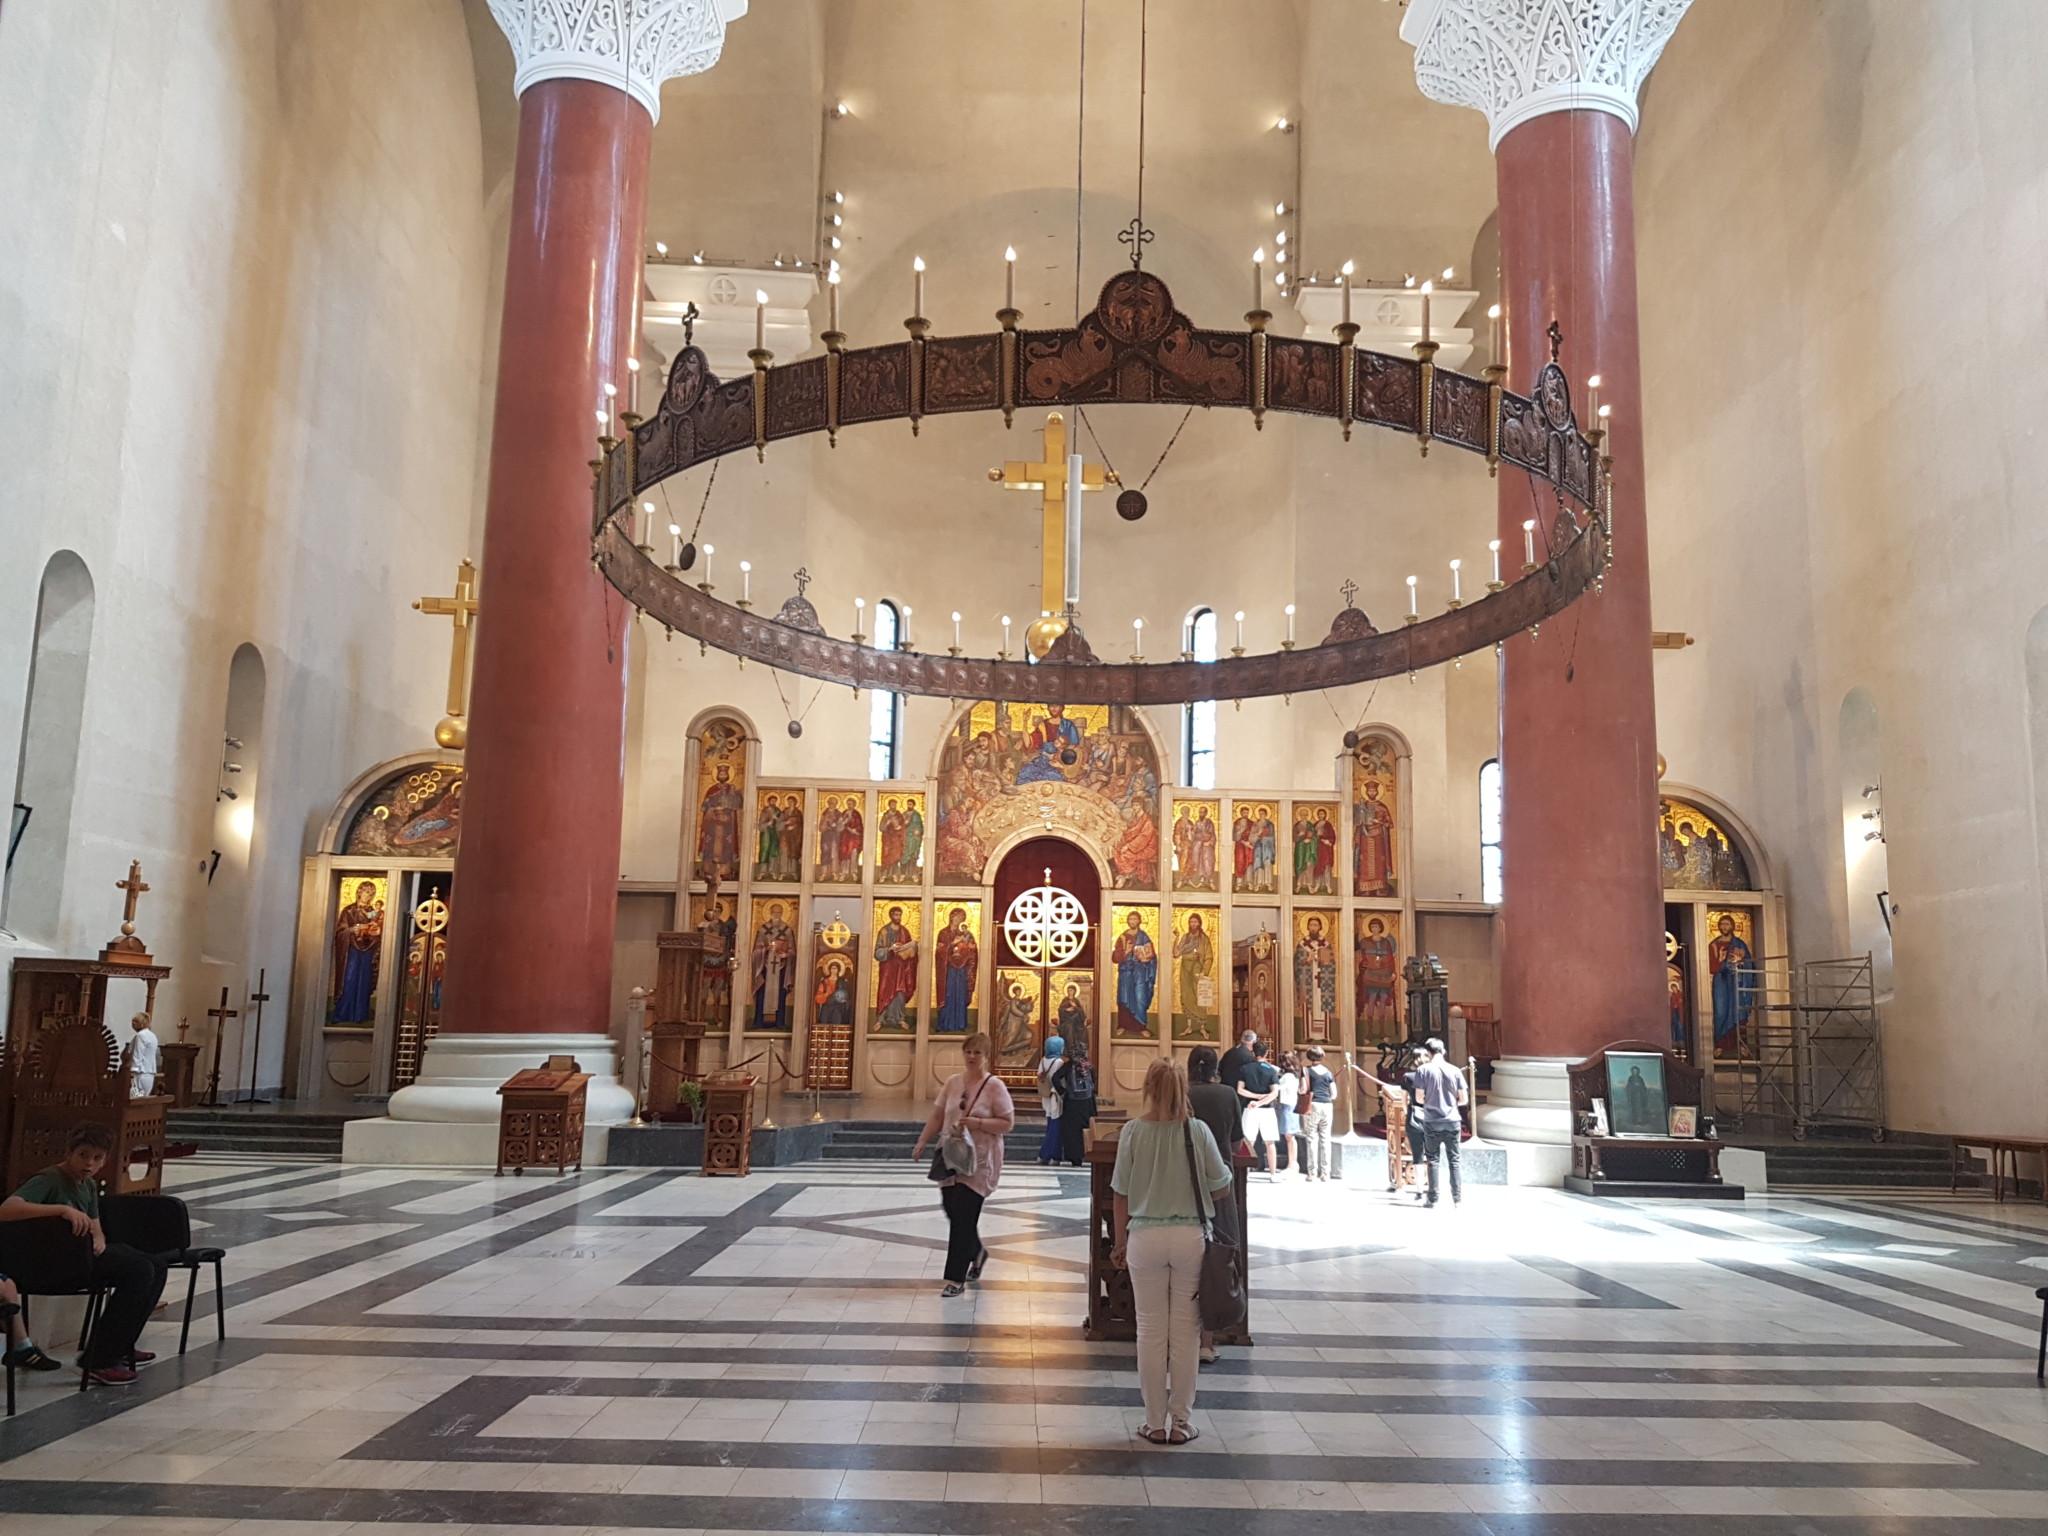 Inside Saint Mark's Church